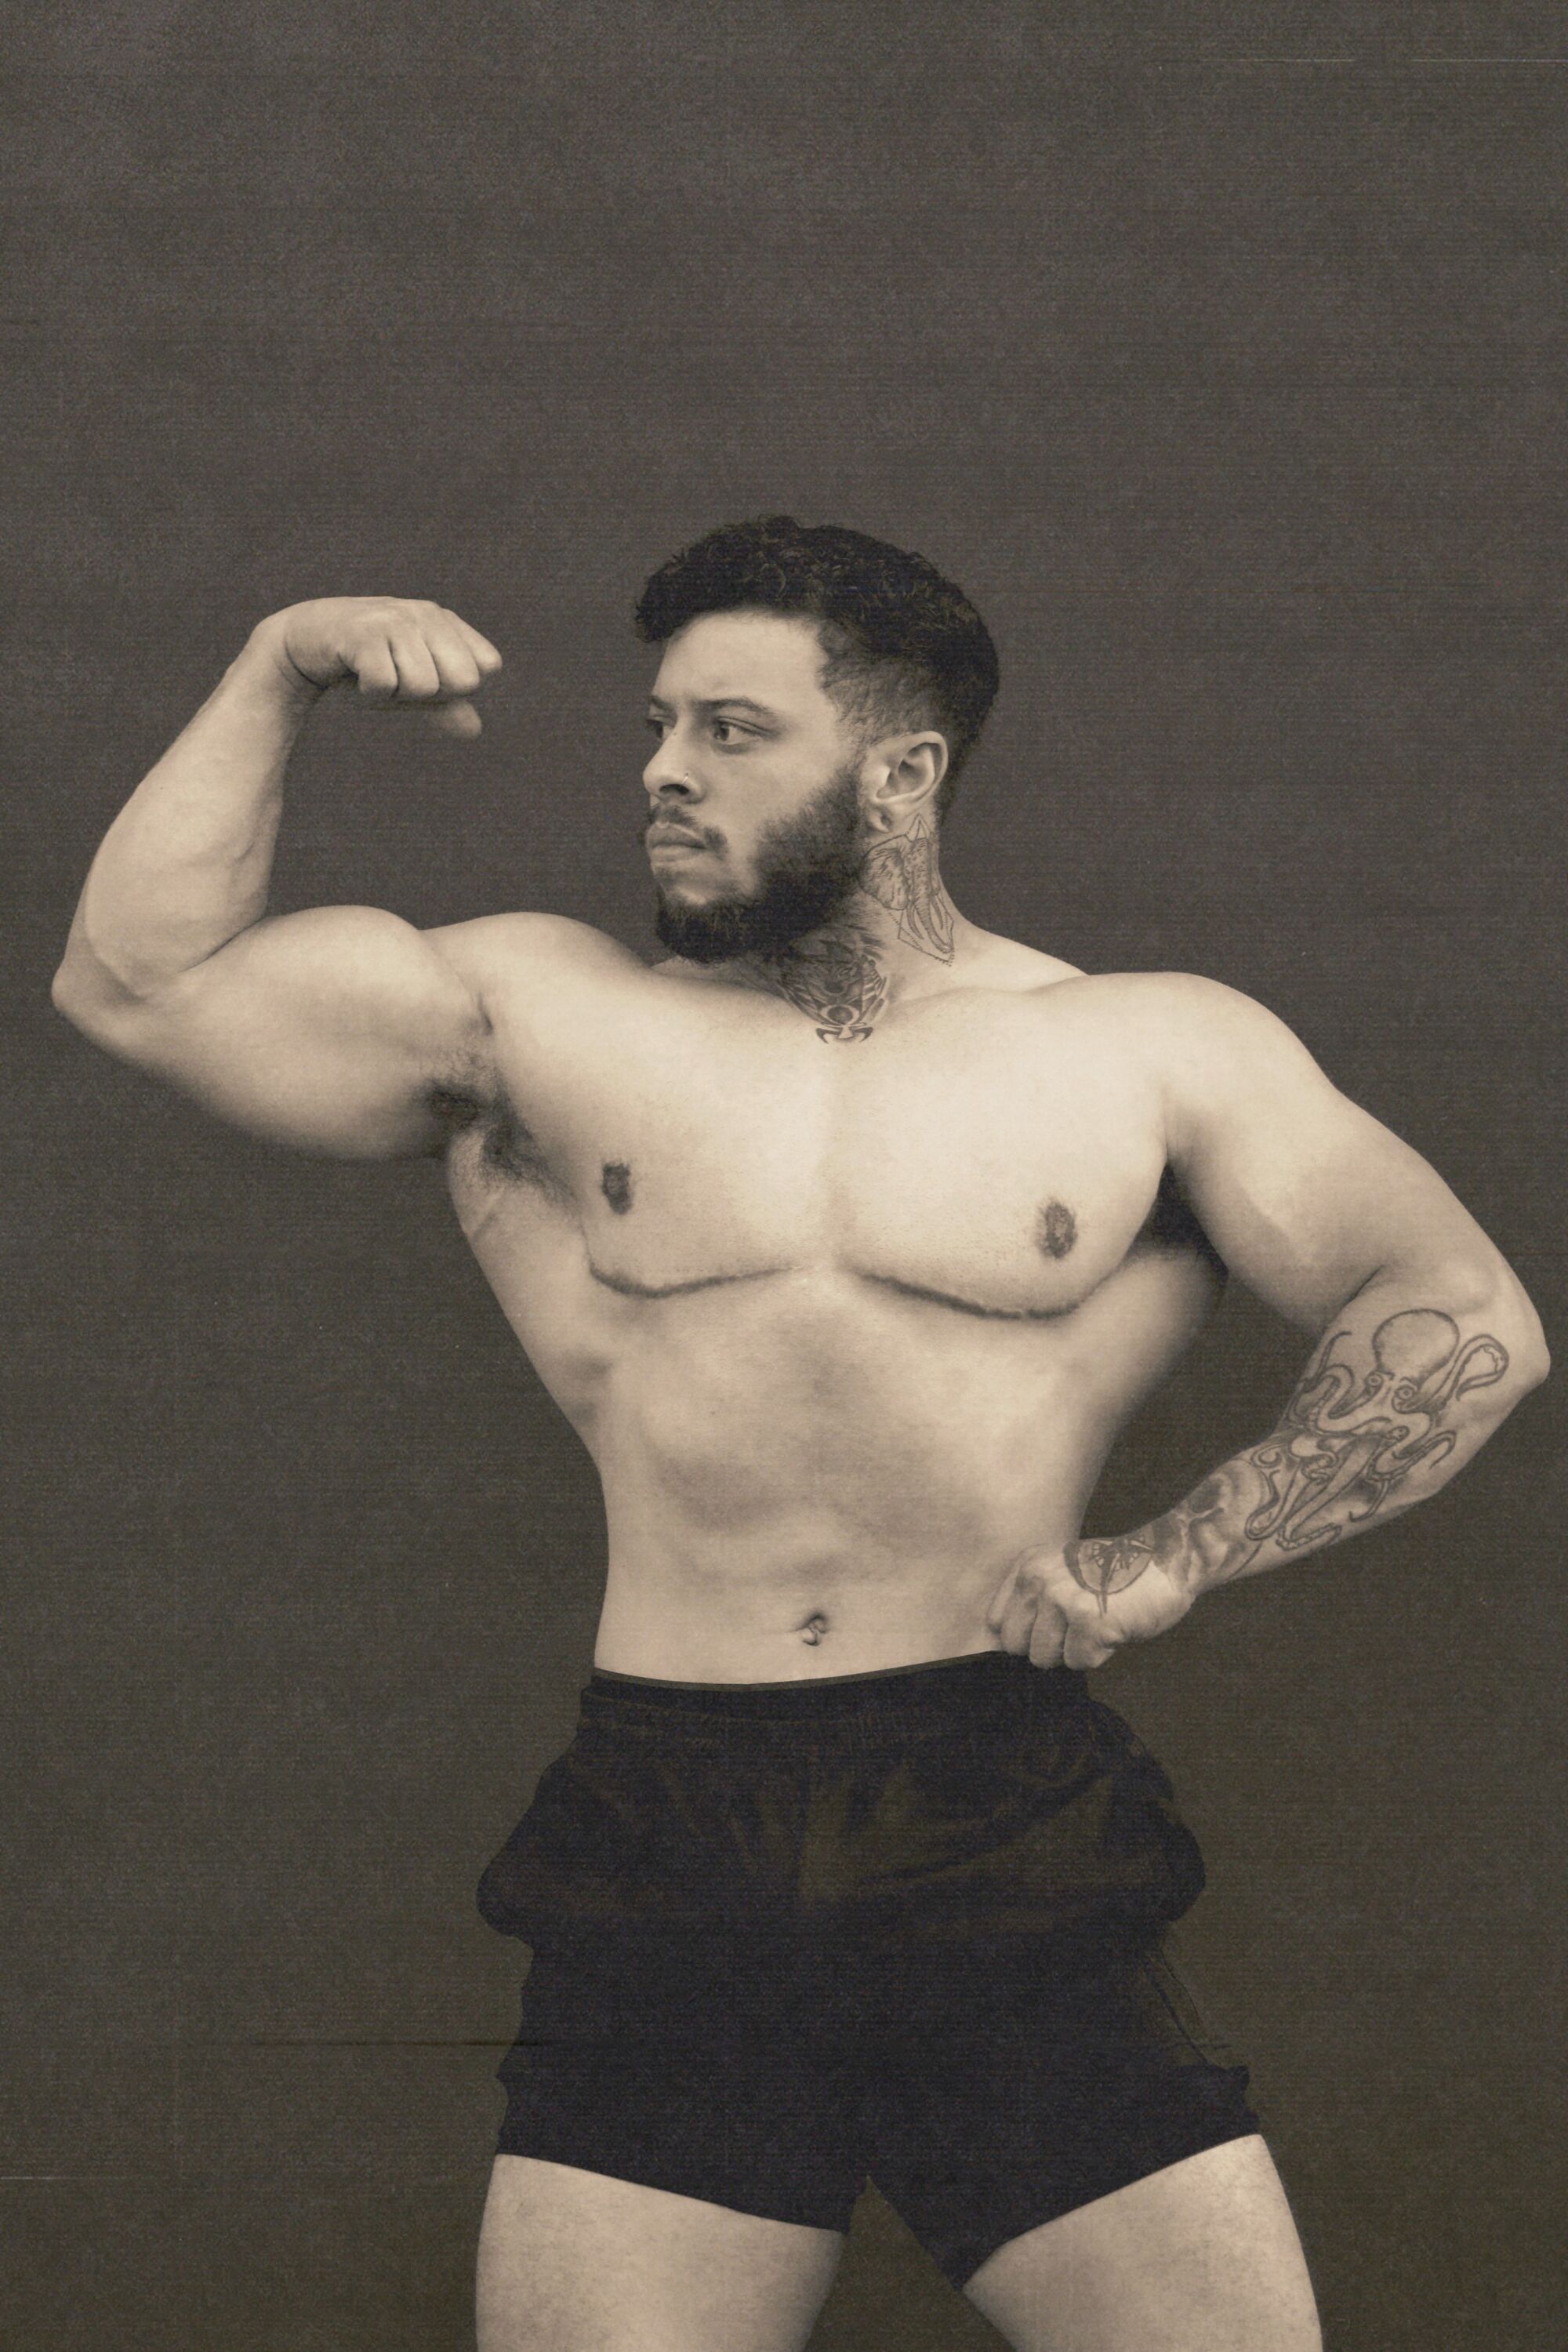 Bodybuilder Ajay Holbrook.